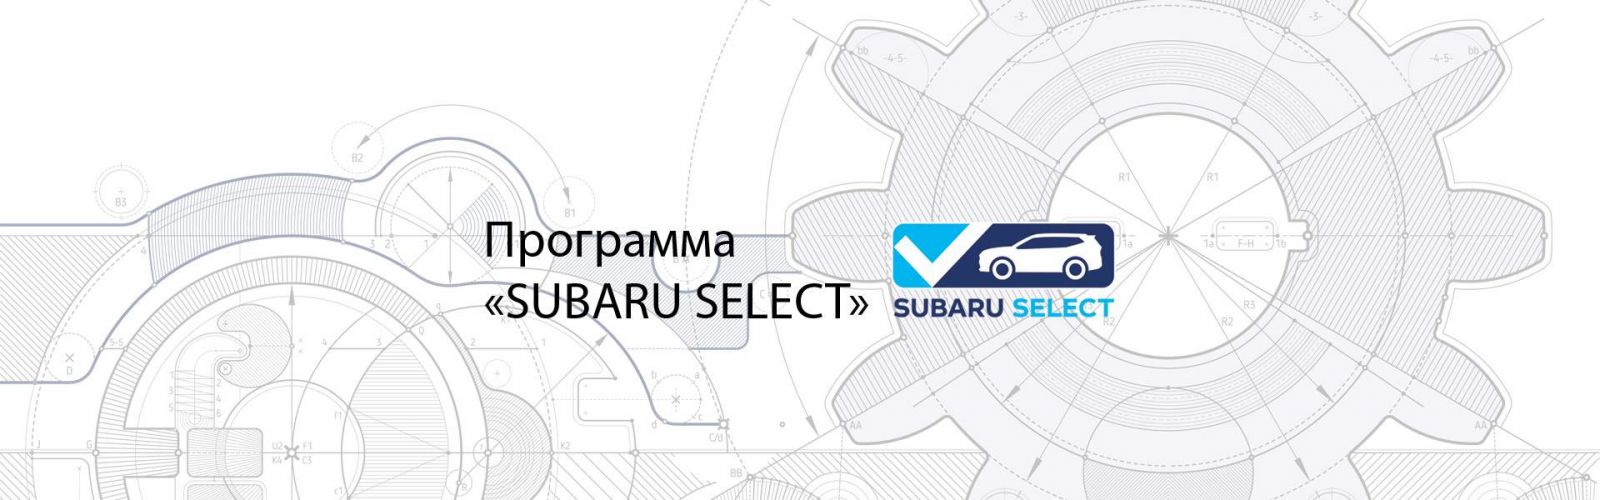 Program Subaru Certified Used Vehicle (CPO).